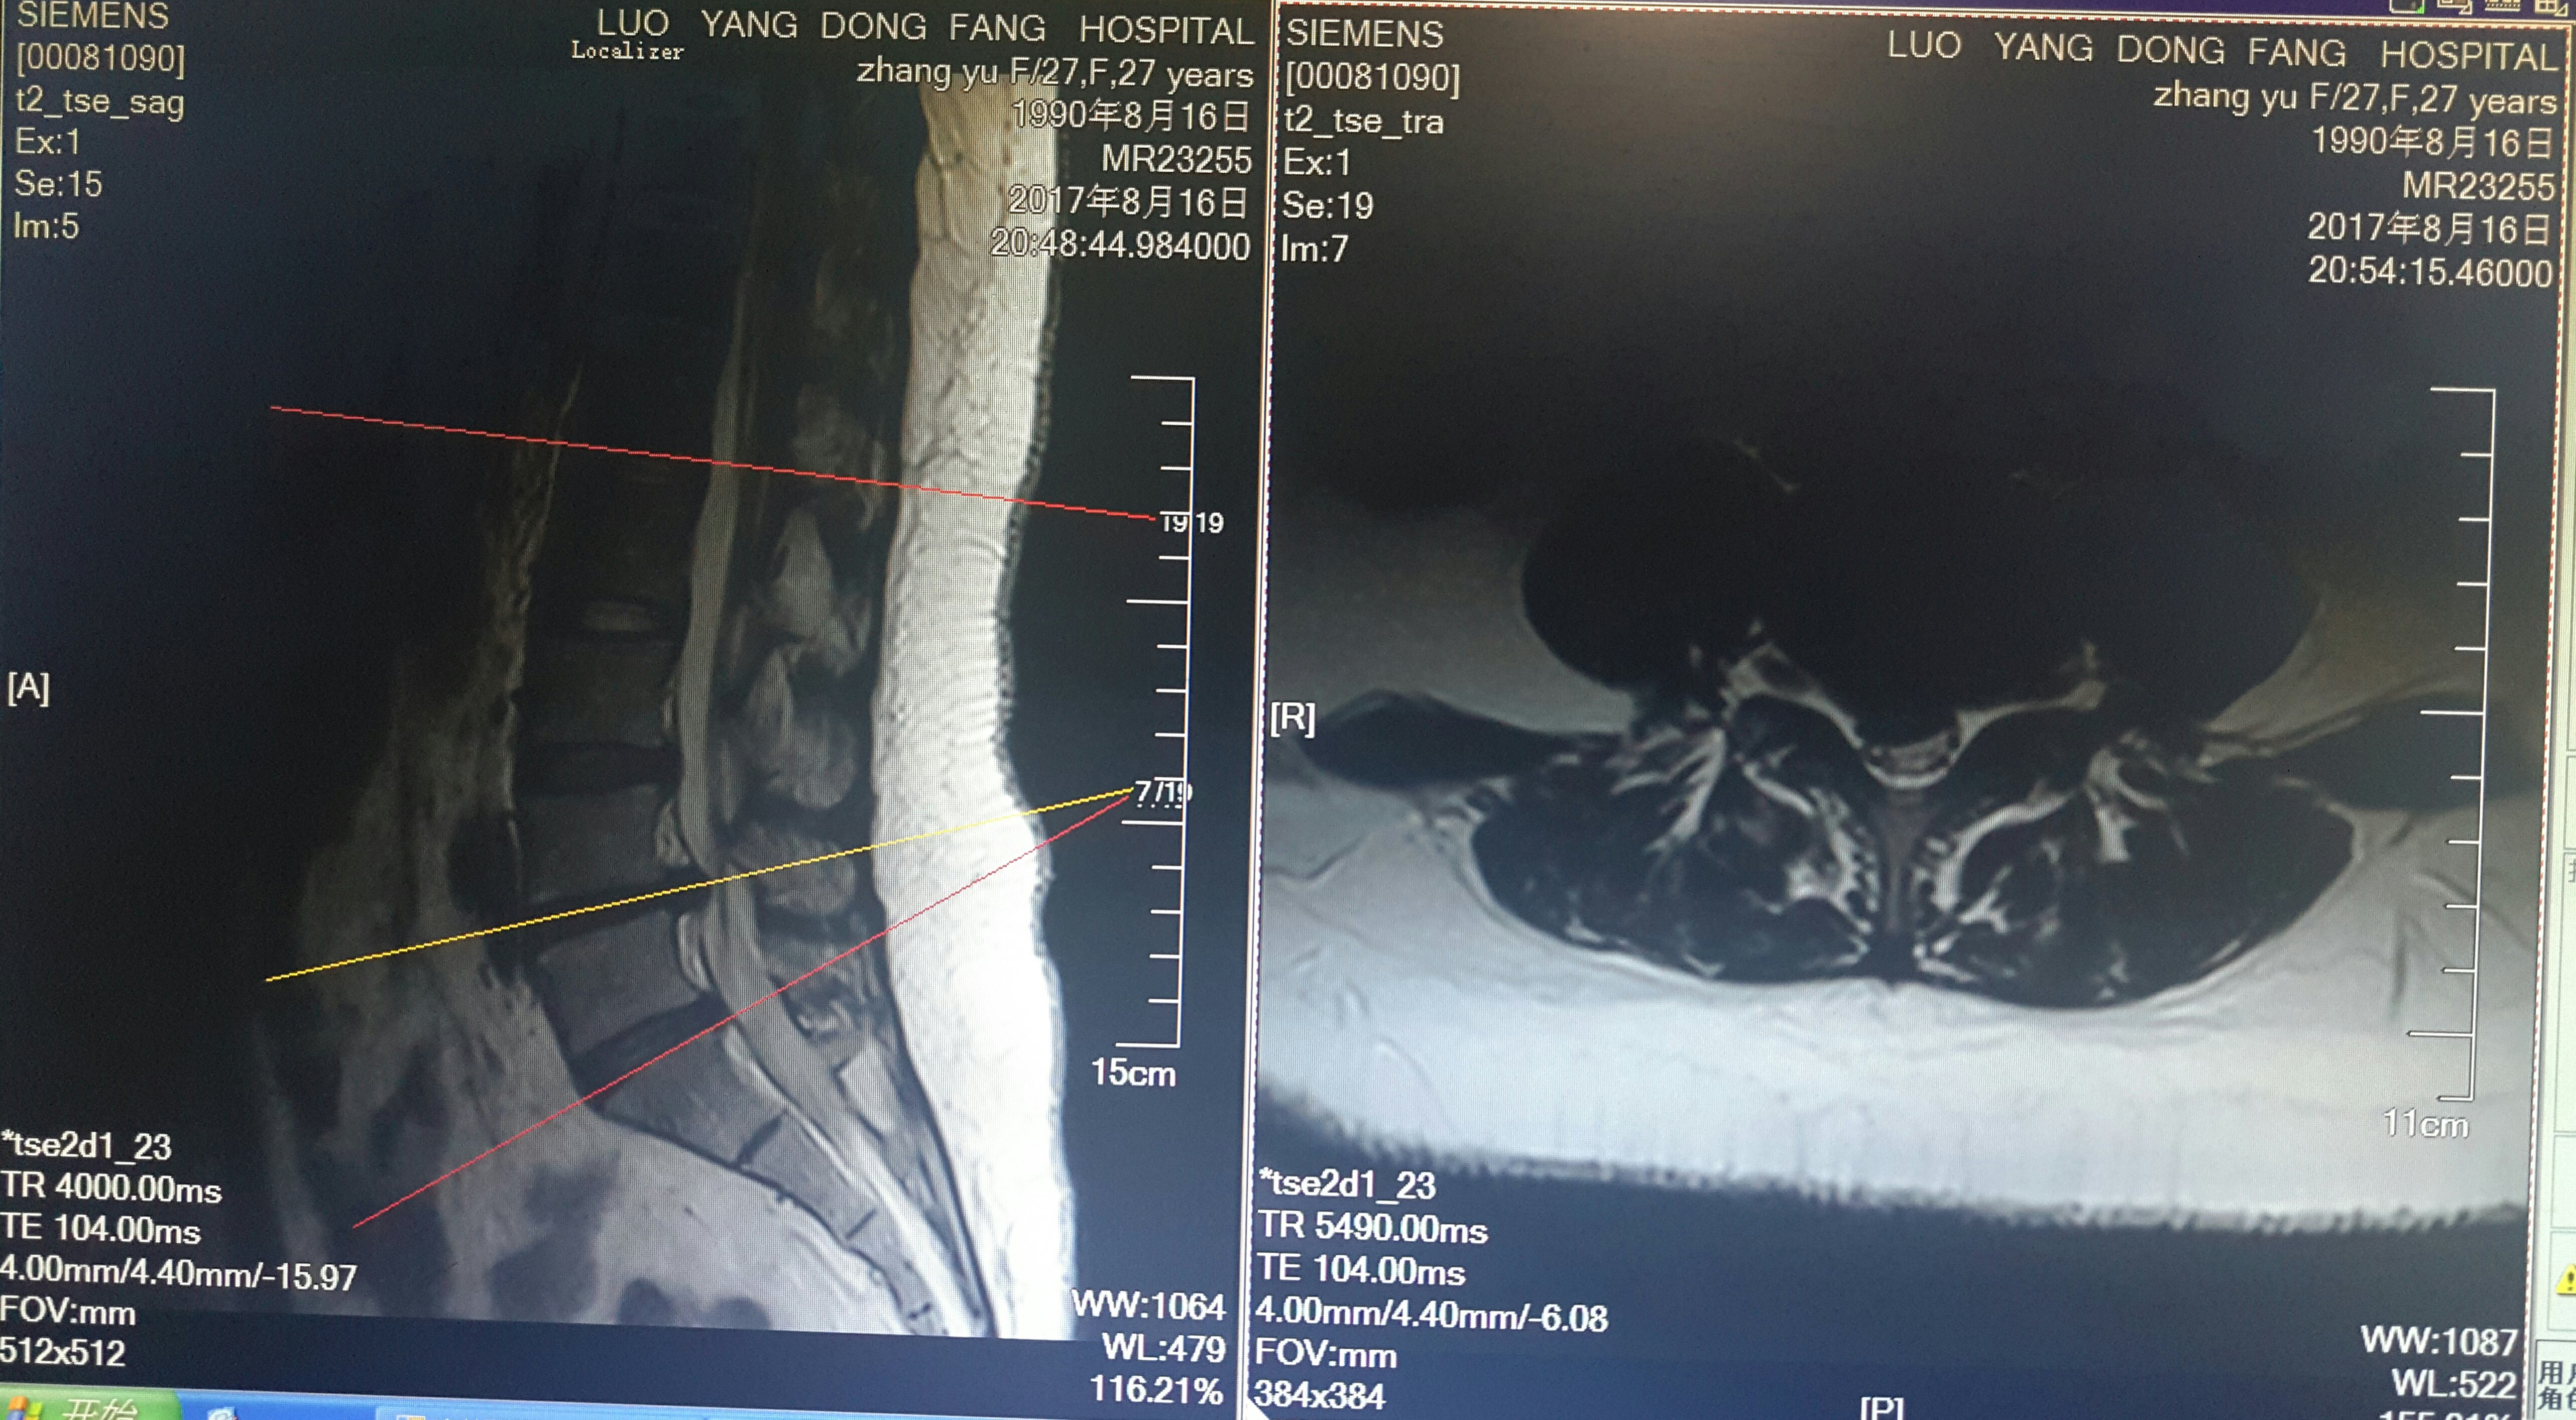 脊柱内镜翻修腰椎间盘突出症胶原酶溶核术后复